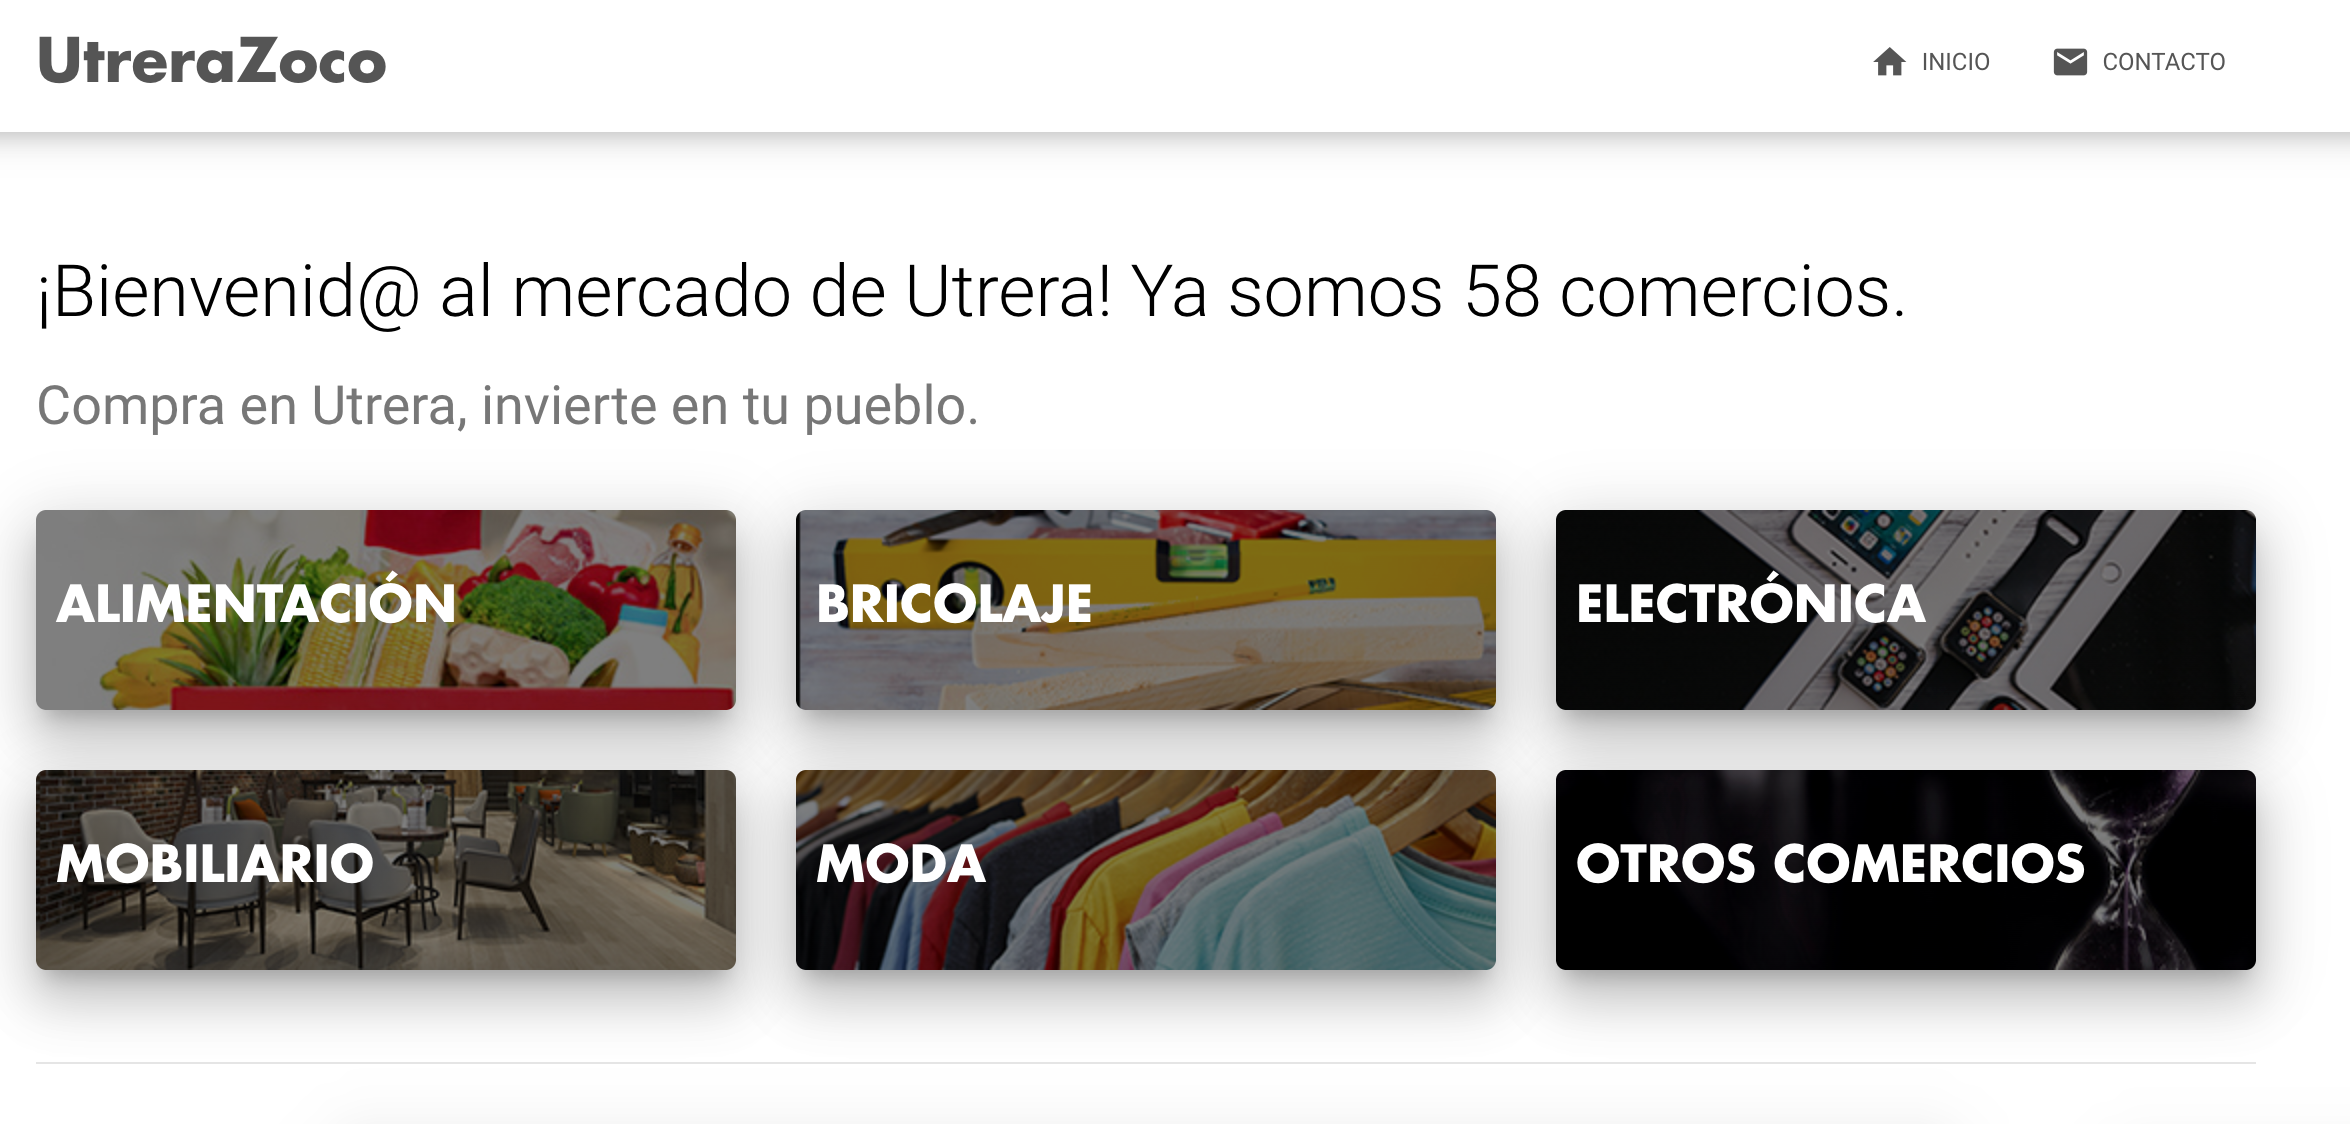 El Ayuntamiento lanza utrerazoco.com, una plataforma de ventas que arranca con más de 60 comercios